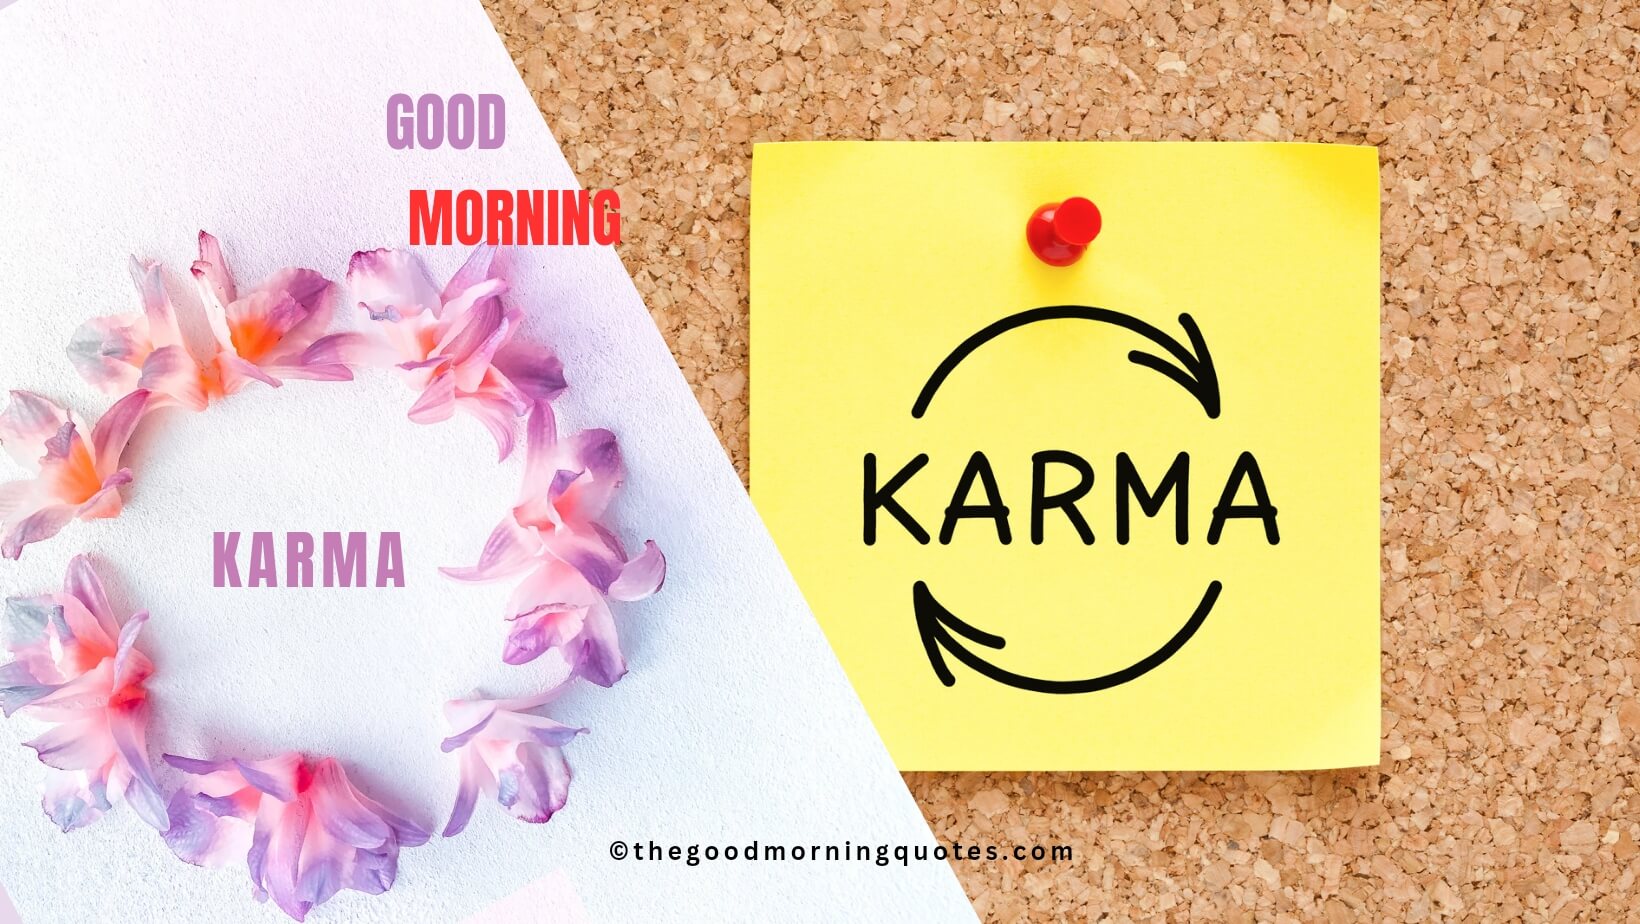 Good Morning Karma Quotes in Hindi